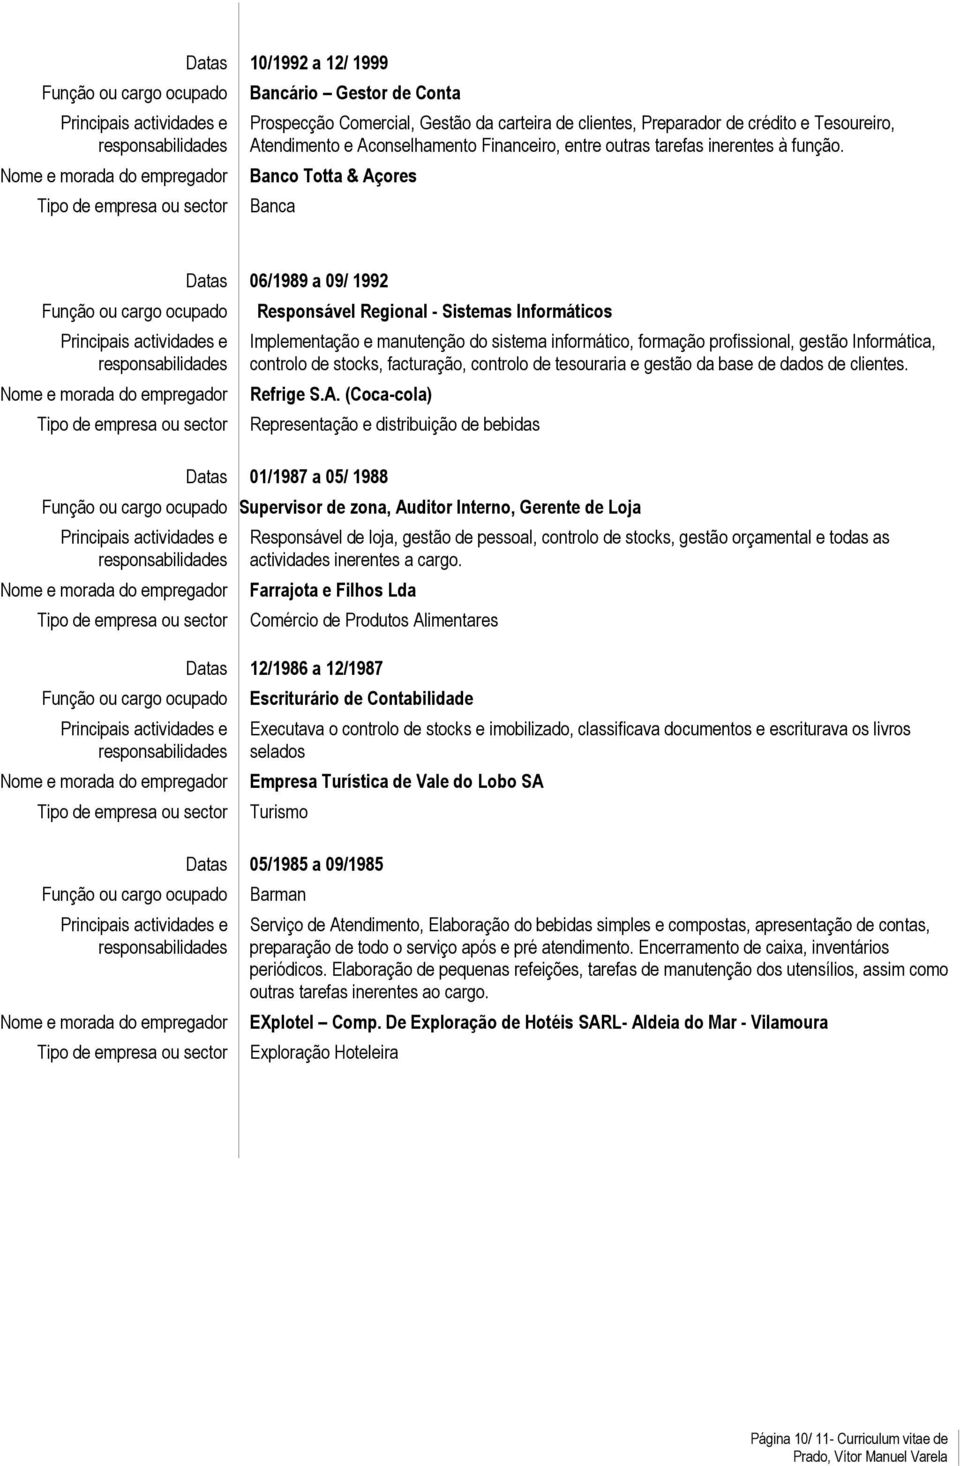 Banco Totta & Açores Banca Datas 06/1989 a 09/ 1992 Responsável Regional - Sistemas Informáticos Implementação e manutenção do sistema informático, formação profissional, gestão Informática, controlo